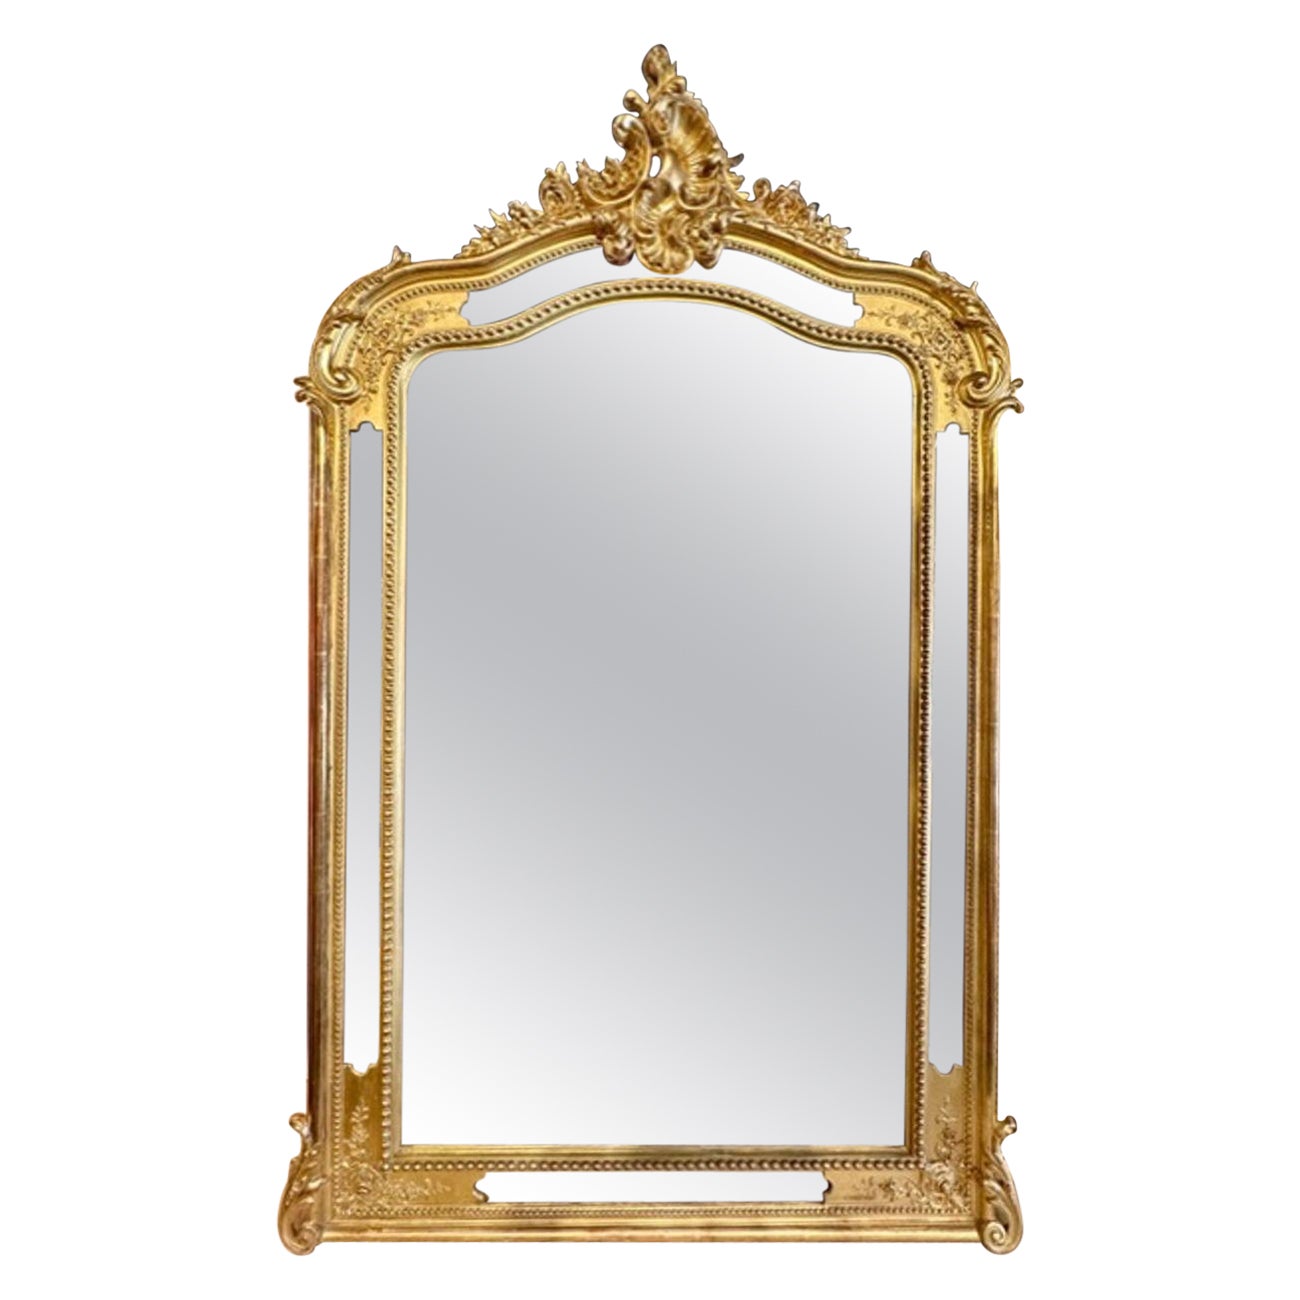 How do I make a gilded mirror?